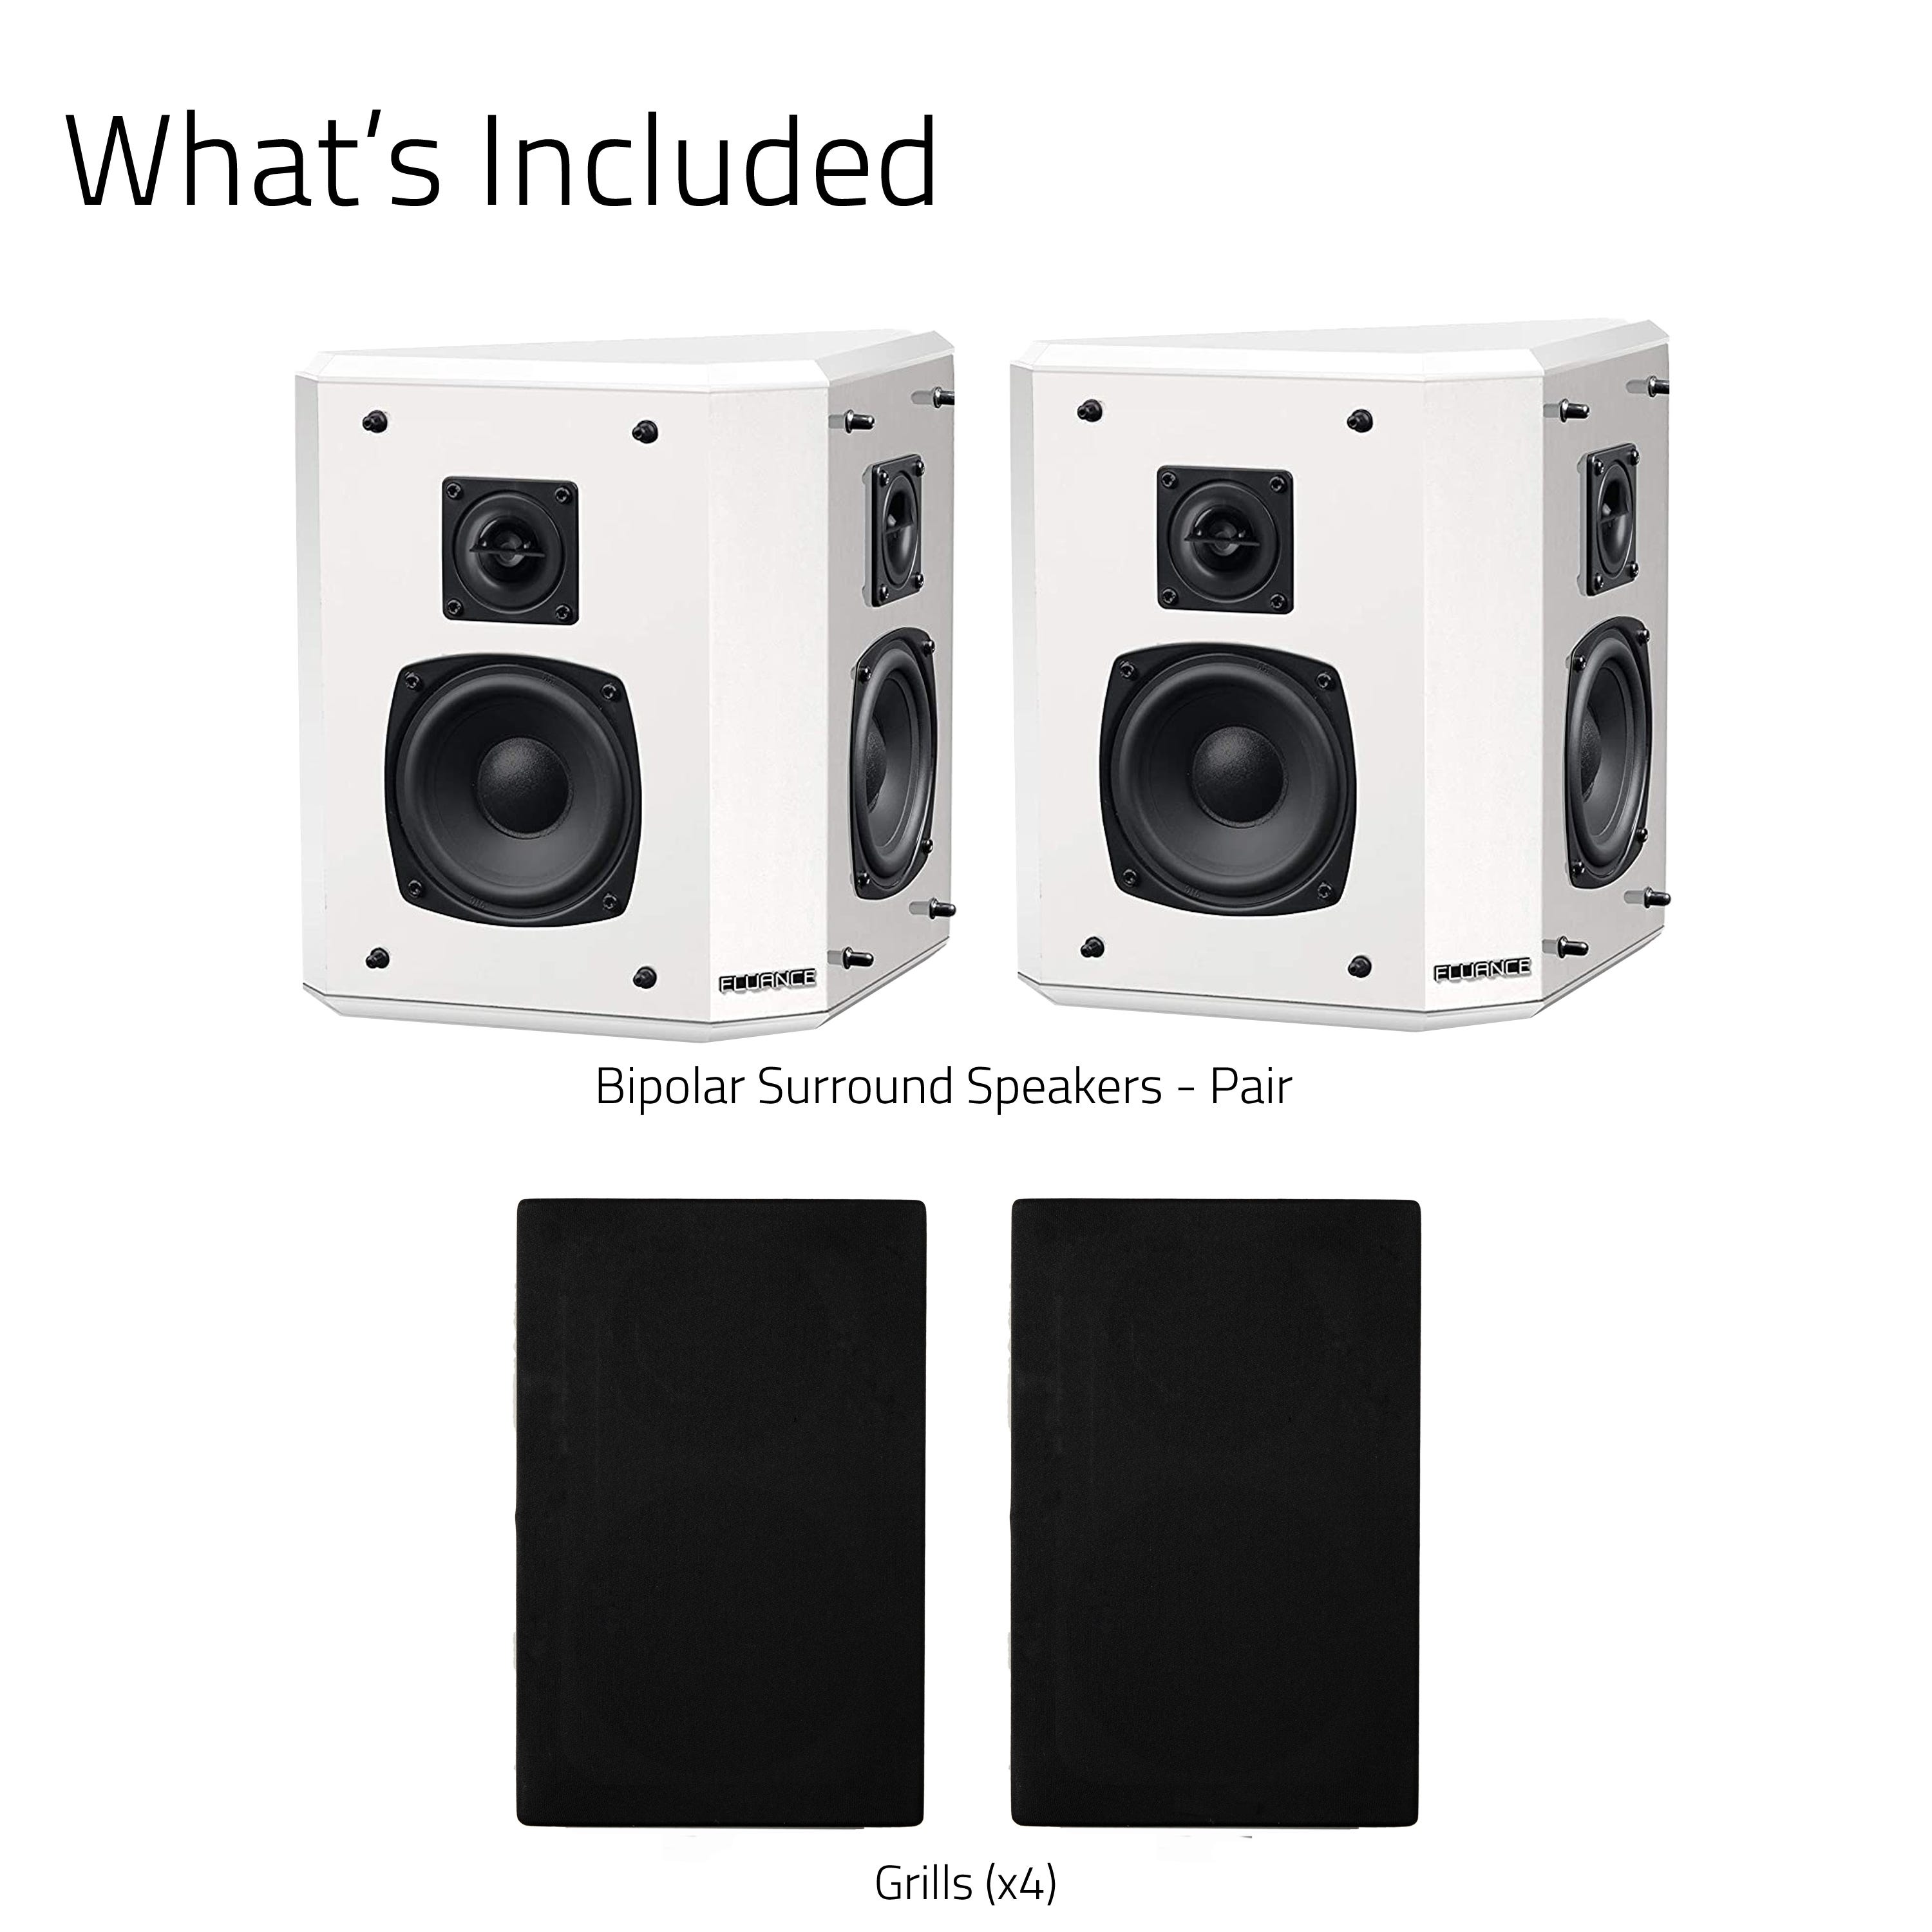 Elite High Definition 2-Way Bipolar Surround Speakers